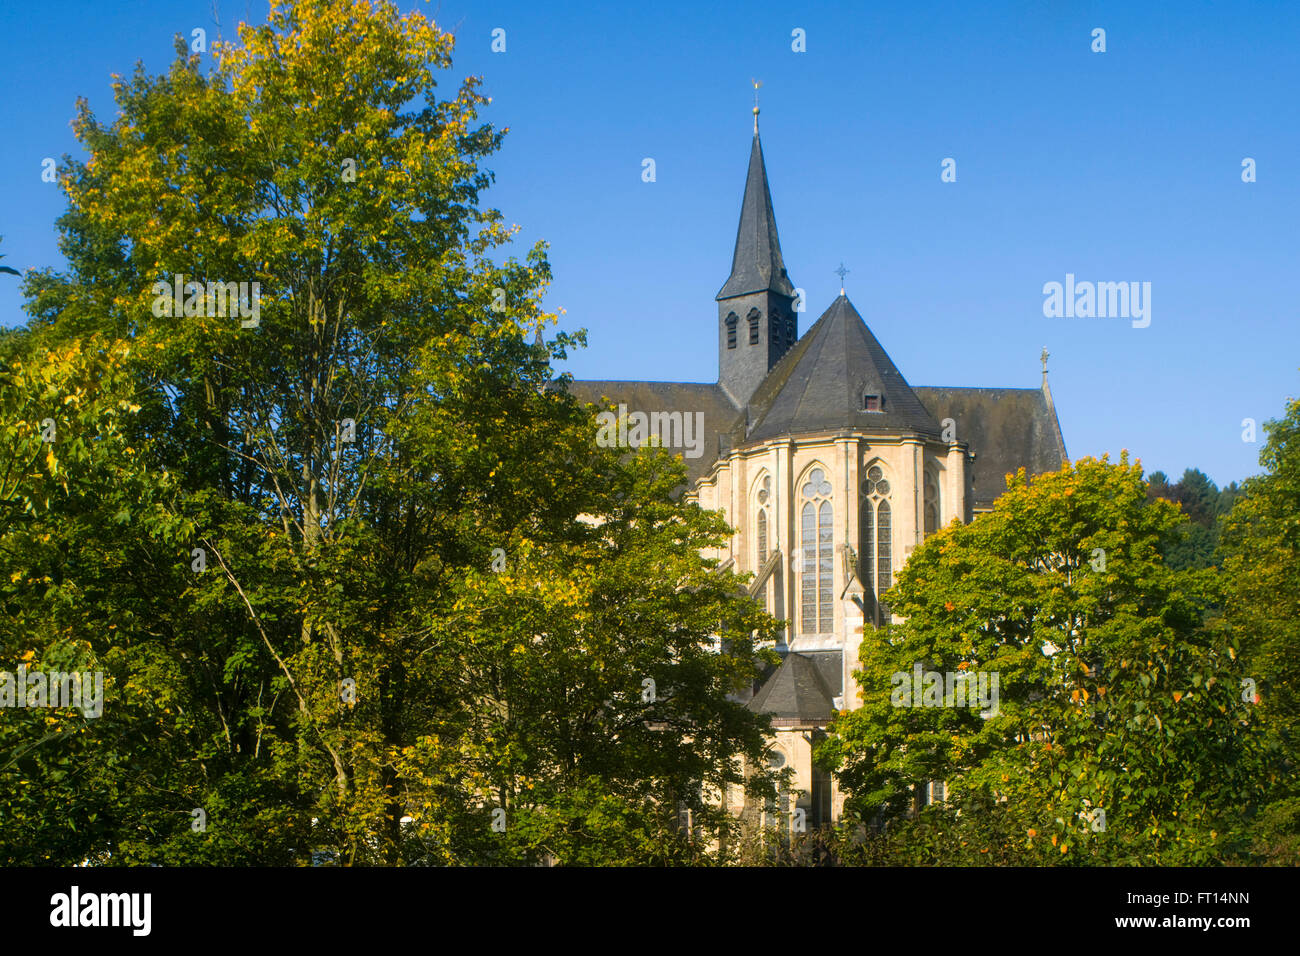 BRD, Nordrhein-Westfalen, Rhin-berg, Altenberg, Altenberger Dom ist im gotischen Stil und gebaut aus la Dr Banque D'Images